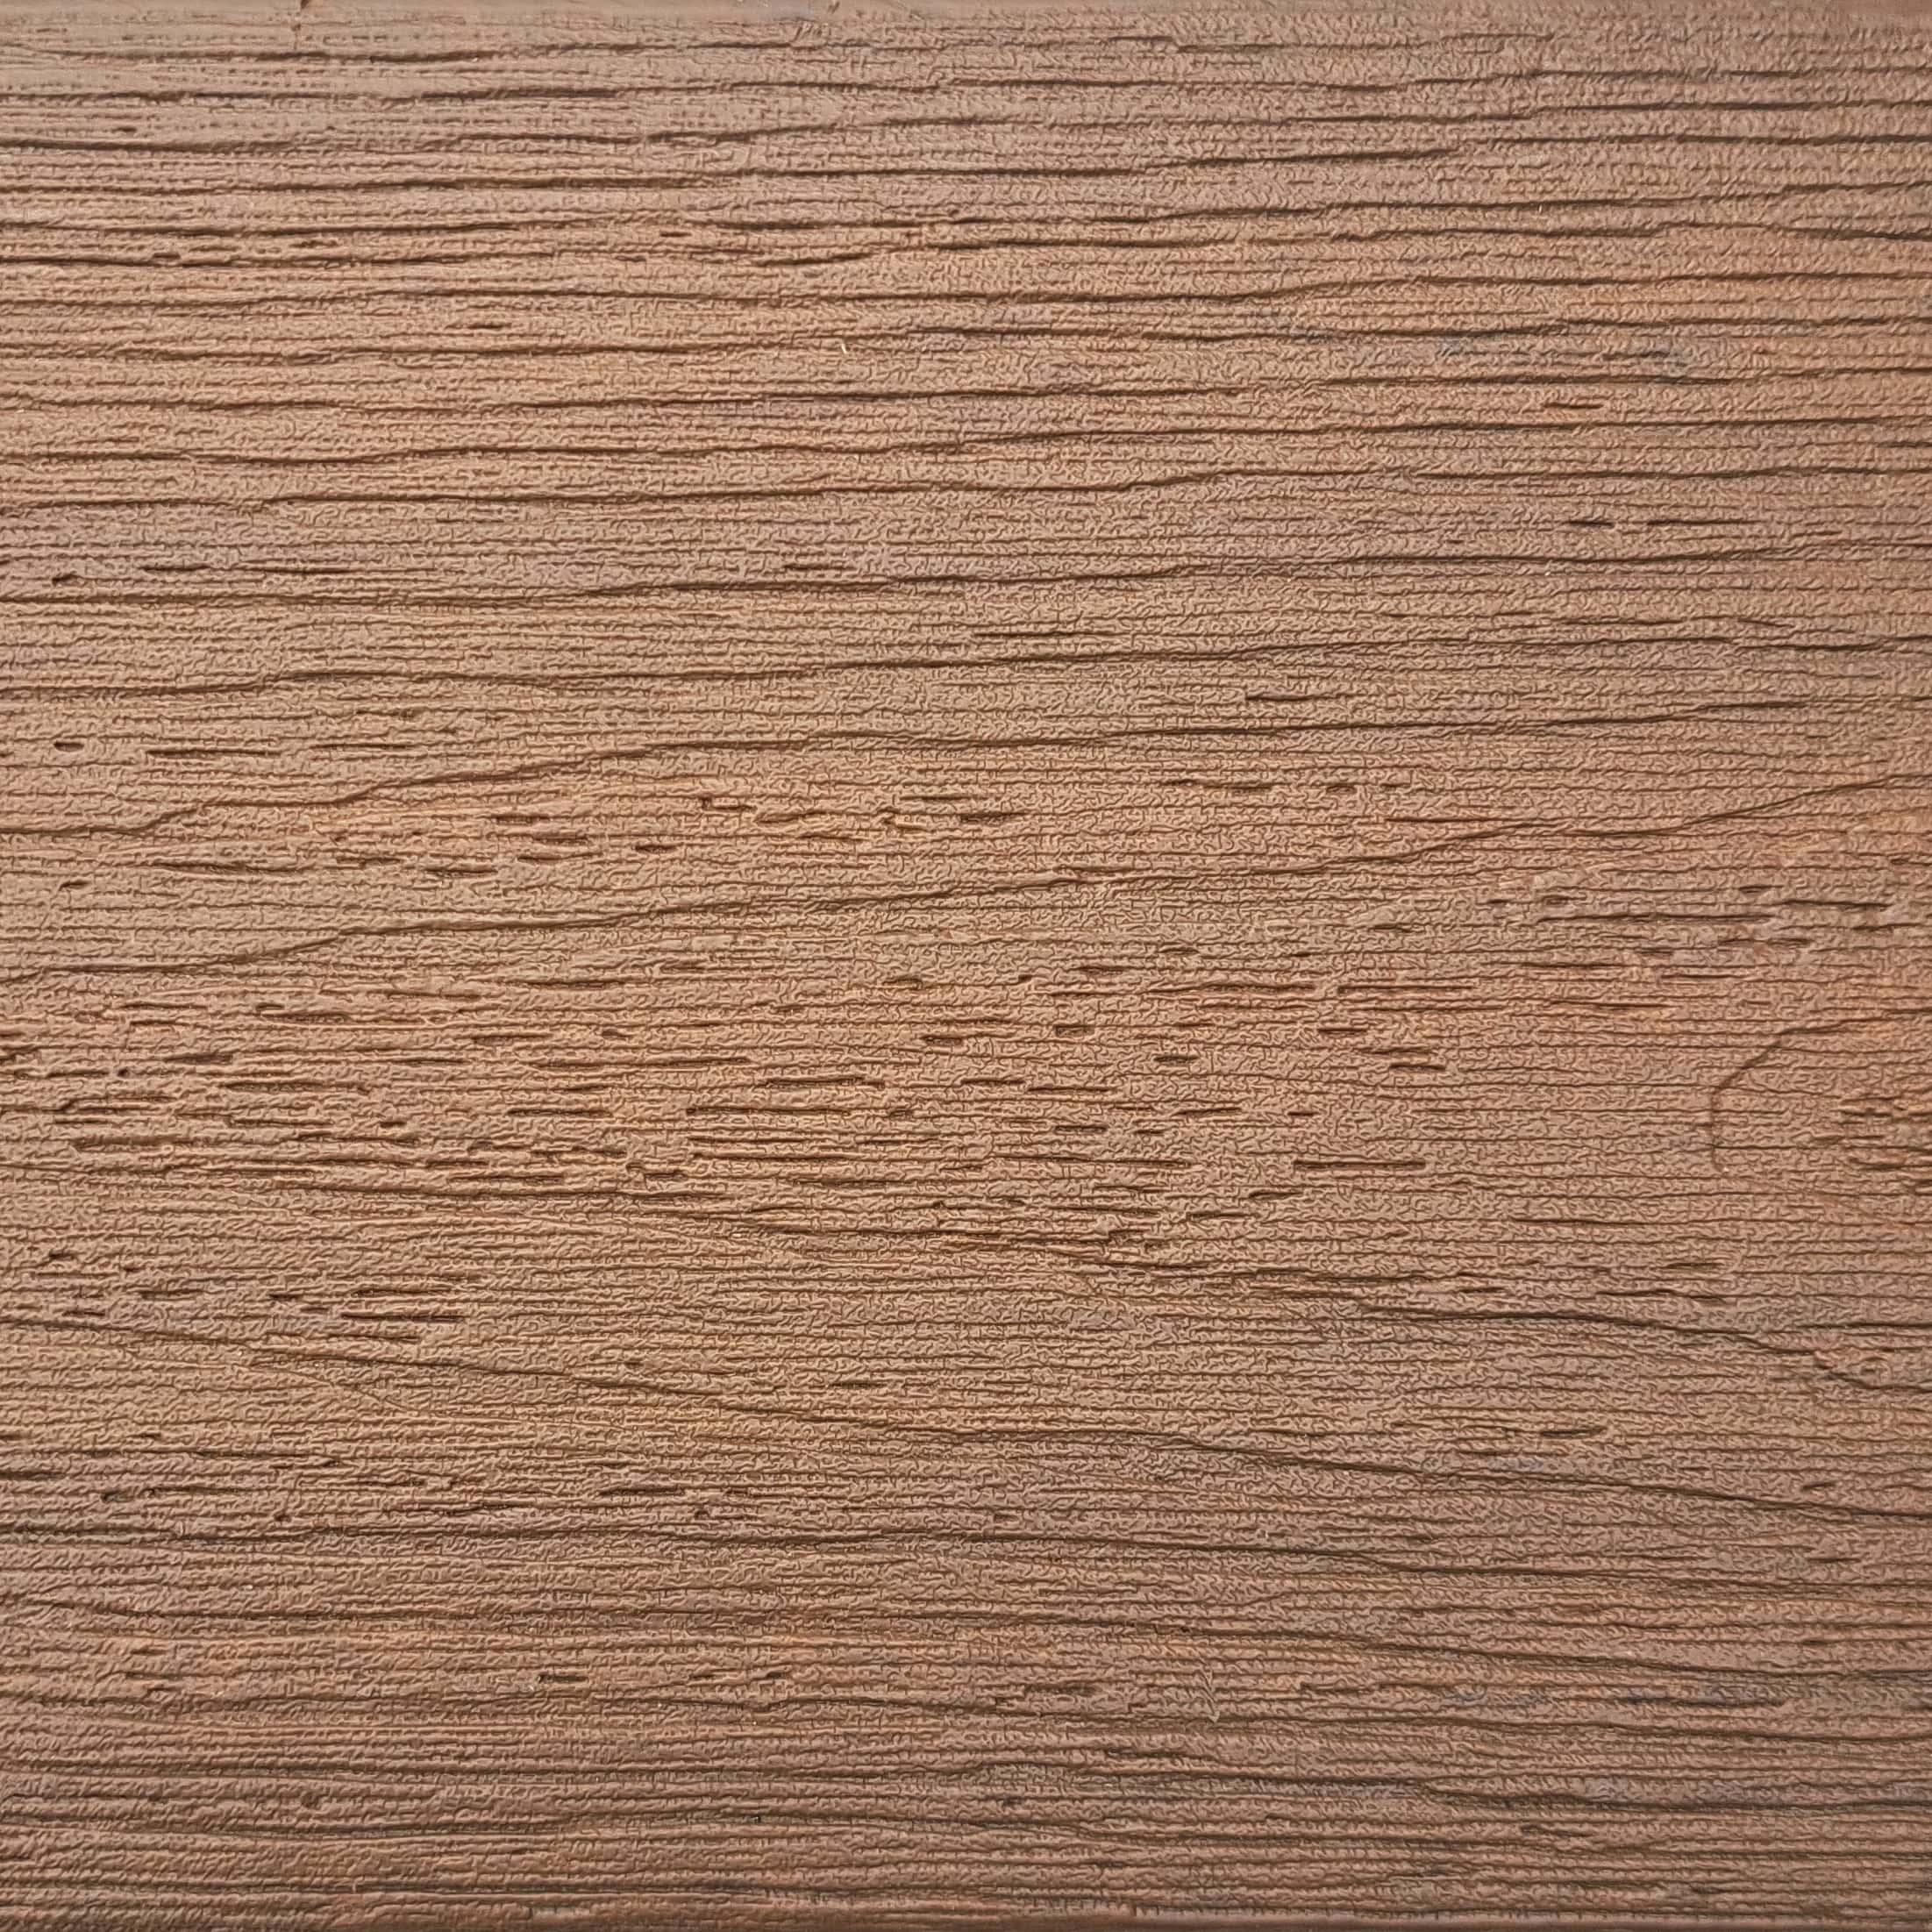 Texture of Fiberon Moringa Decking